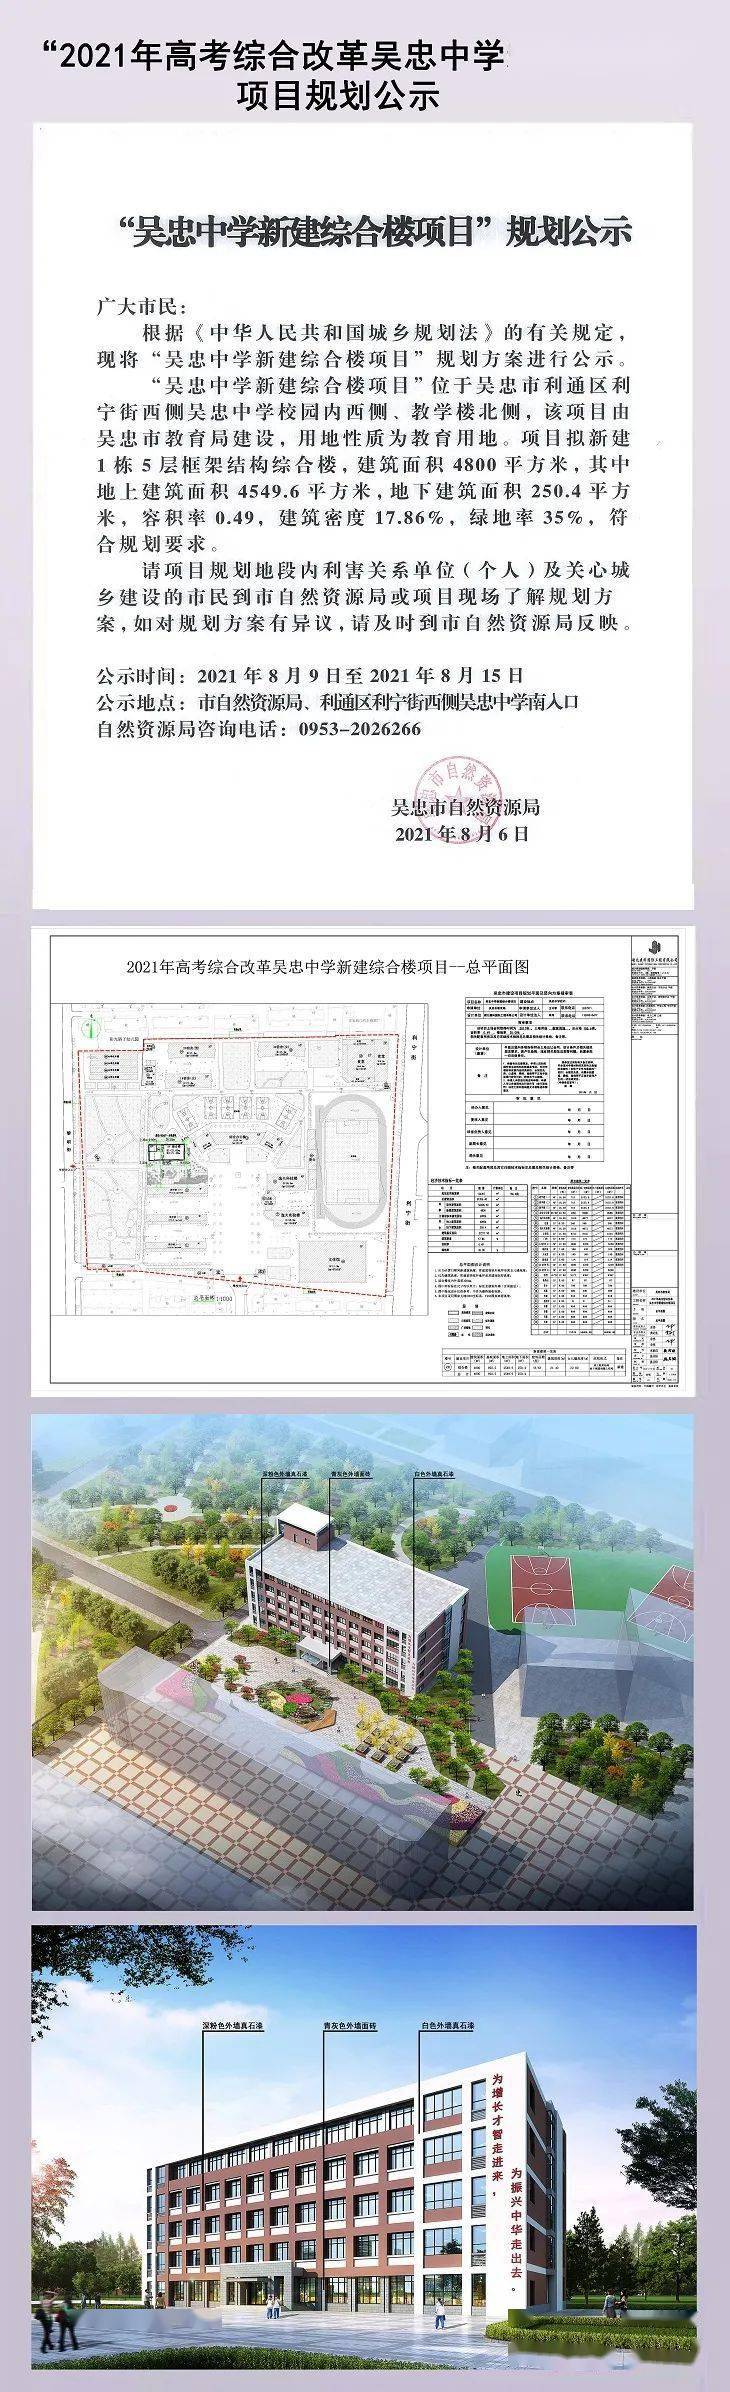 "吴忠中学新建综合楼项目"规划公示